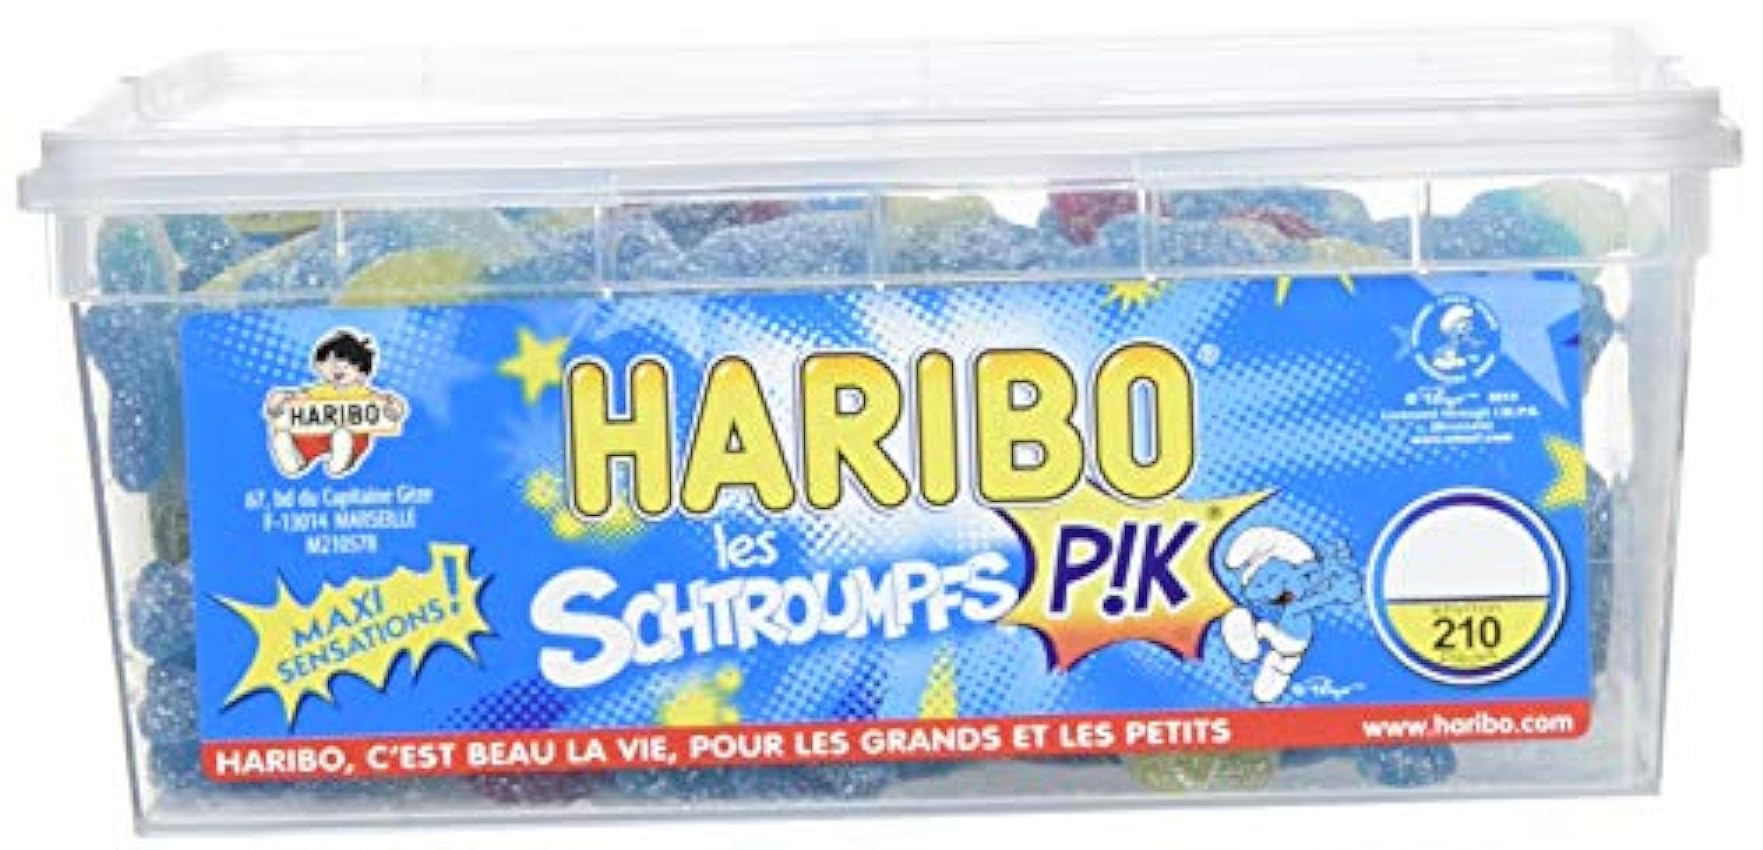 Haribo Bonbon Gélifié les Schtroumpfs Pik x 210 Pièces 1,31 kg LDrL1CCB